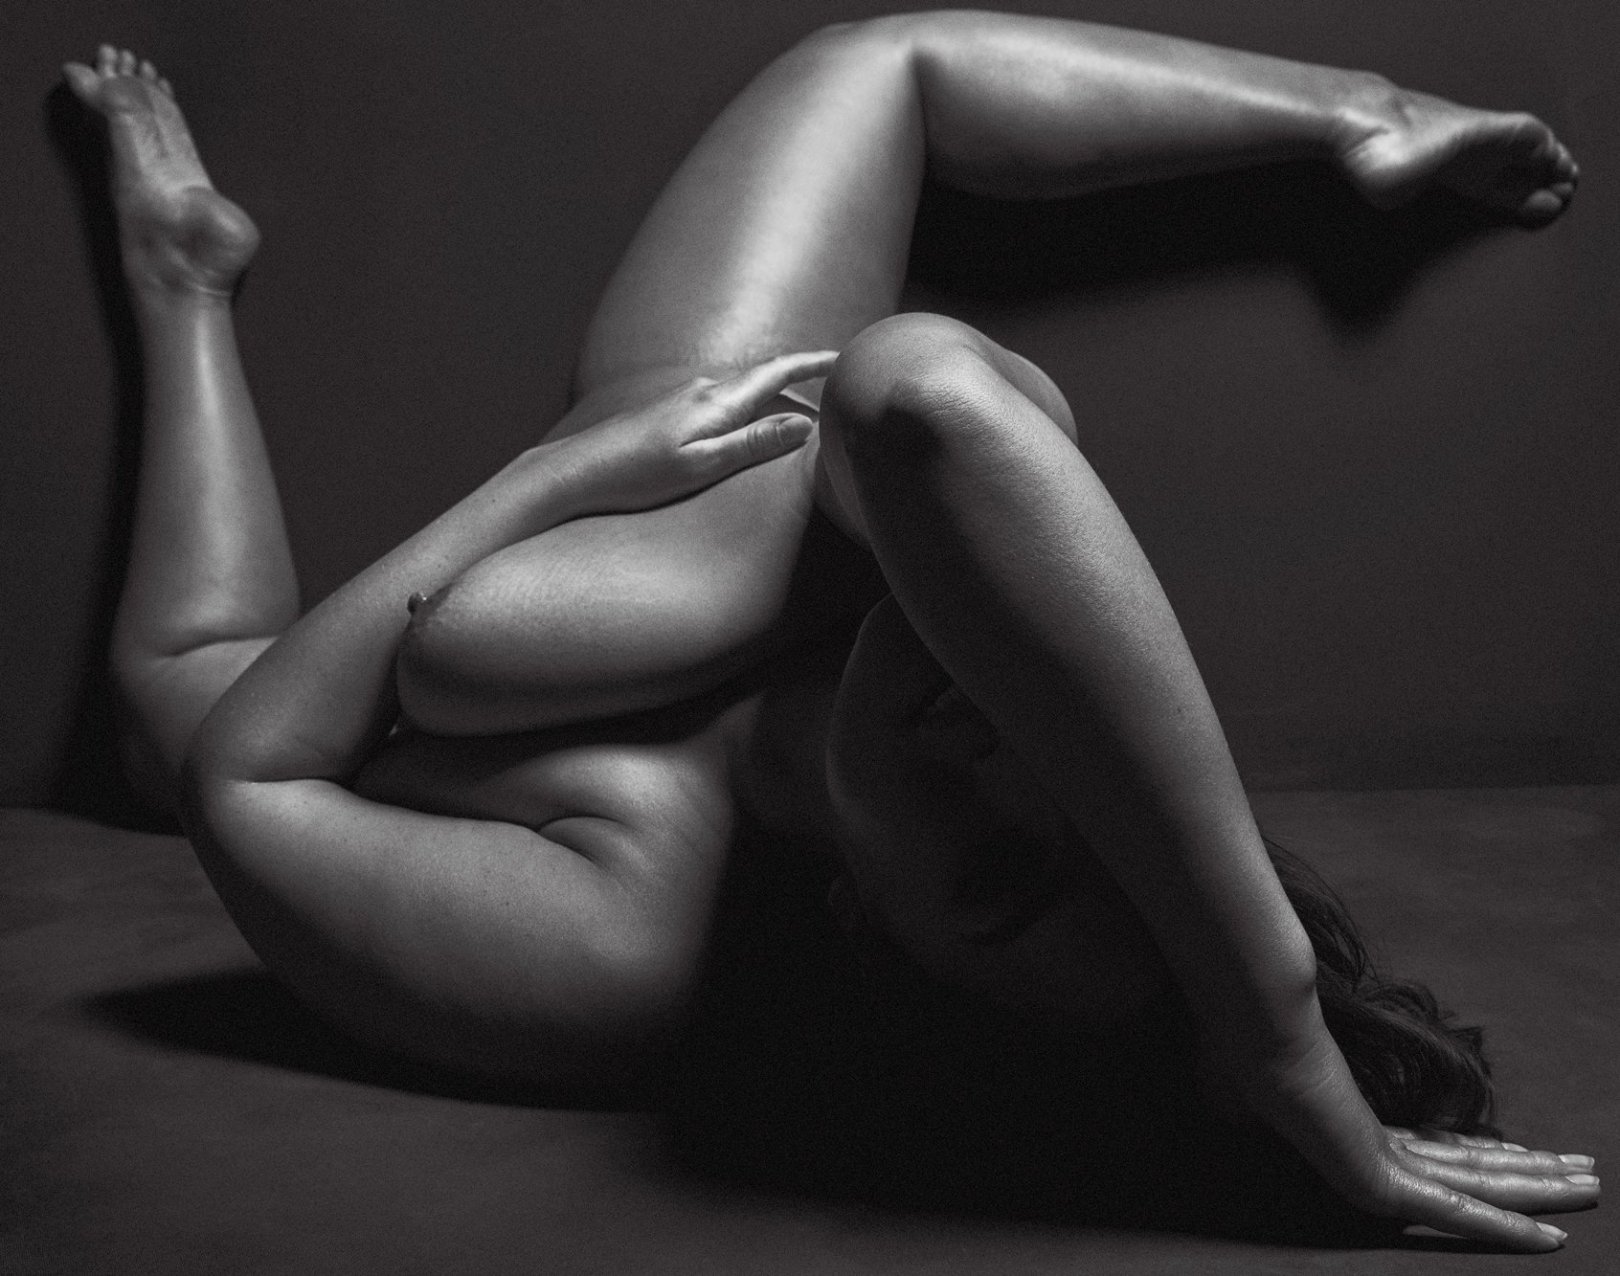 ashley Graham full nude for V magazine.